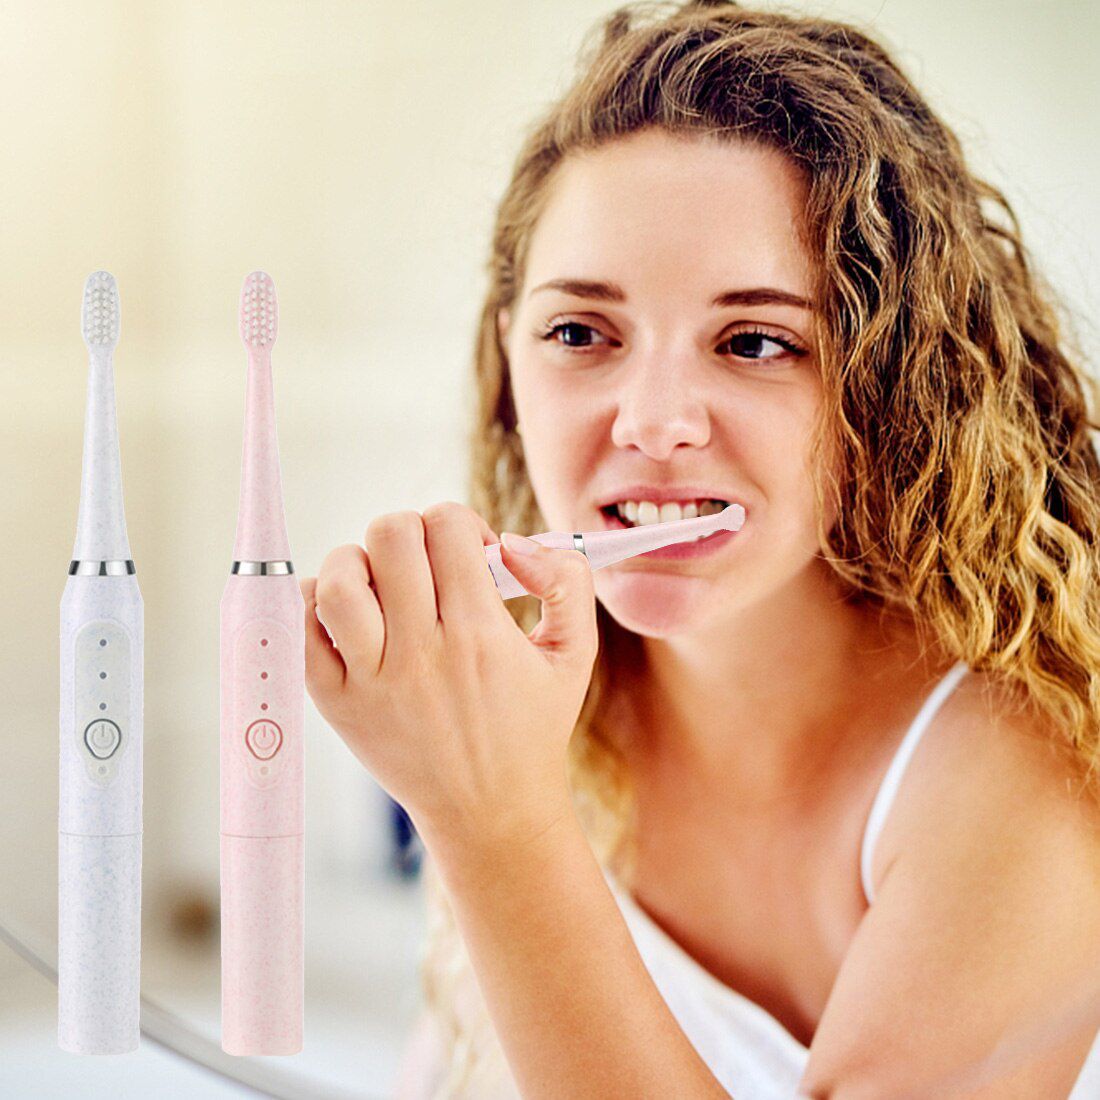 Couple Ultrasonic Electric Toothbrush Adult IPX7 Waterpr